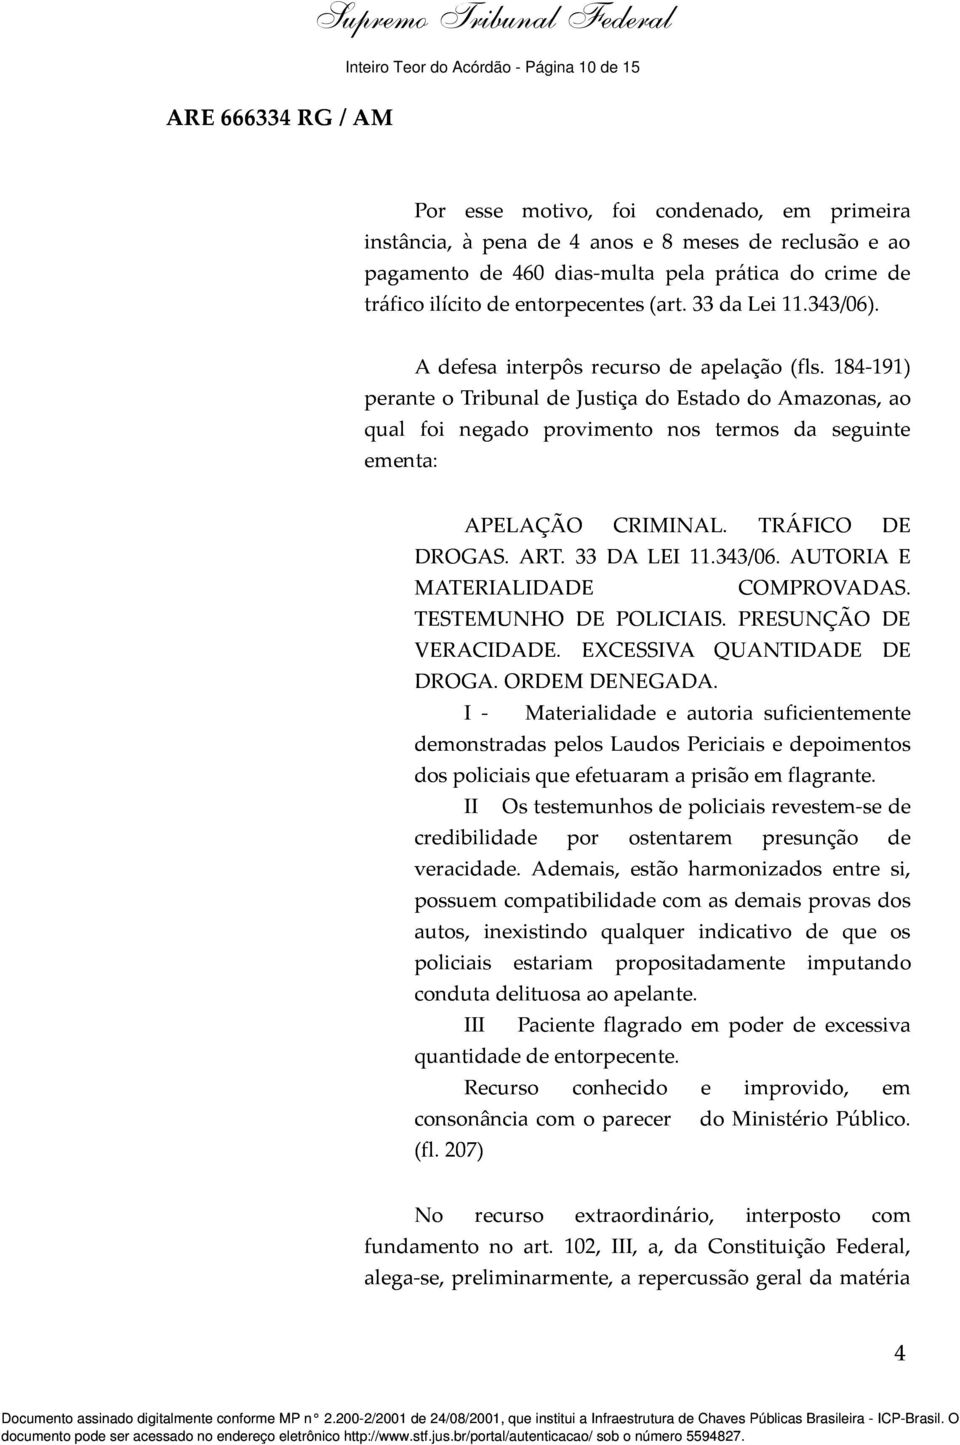 184-191) perante o Tribunal de Justiça do Estado do Amazonas, ao qual foi negado provimento nos termos da seguinte ementa: APELAÇÃO CRIMINAL. TRÁFICO DE DROGAS. ART. 33 DA LEI 11.343/06.